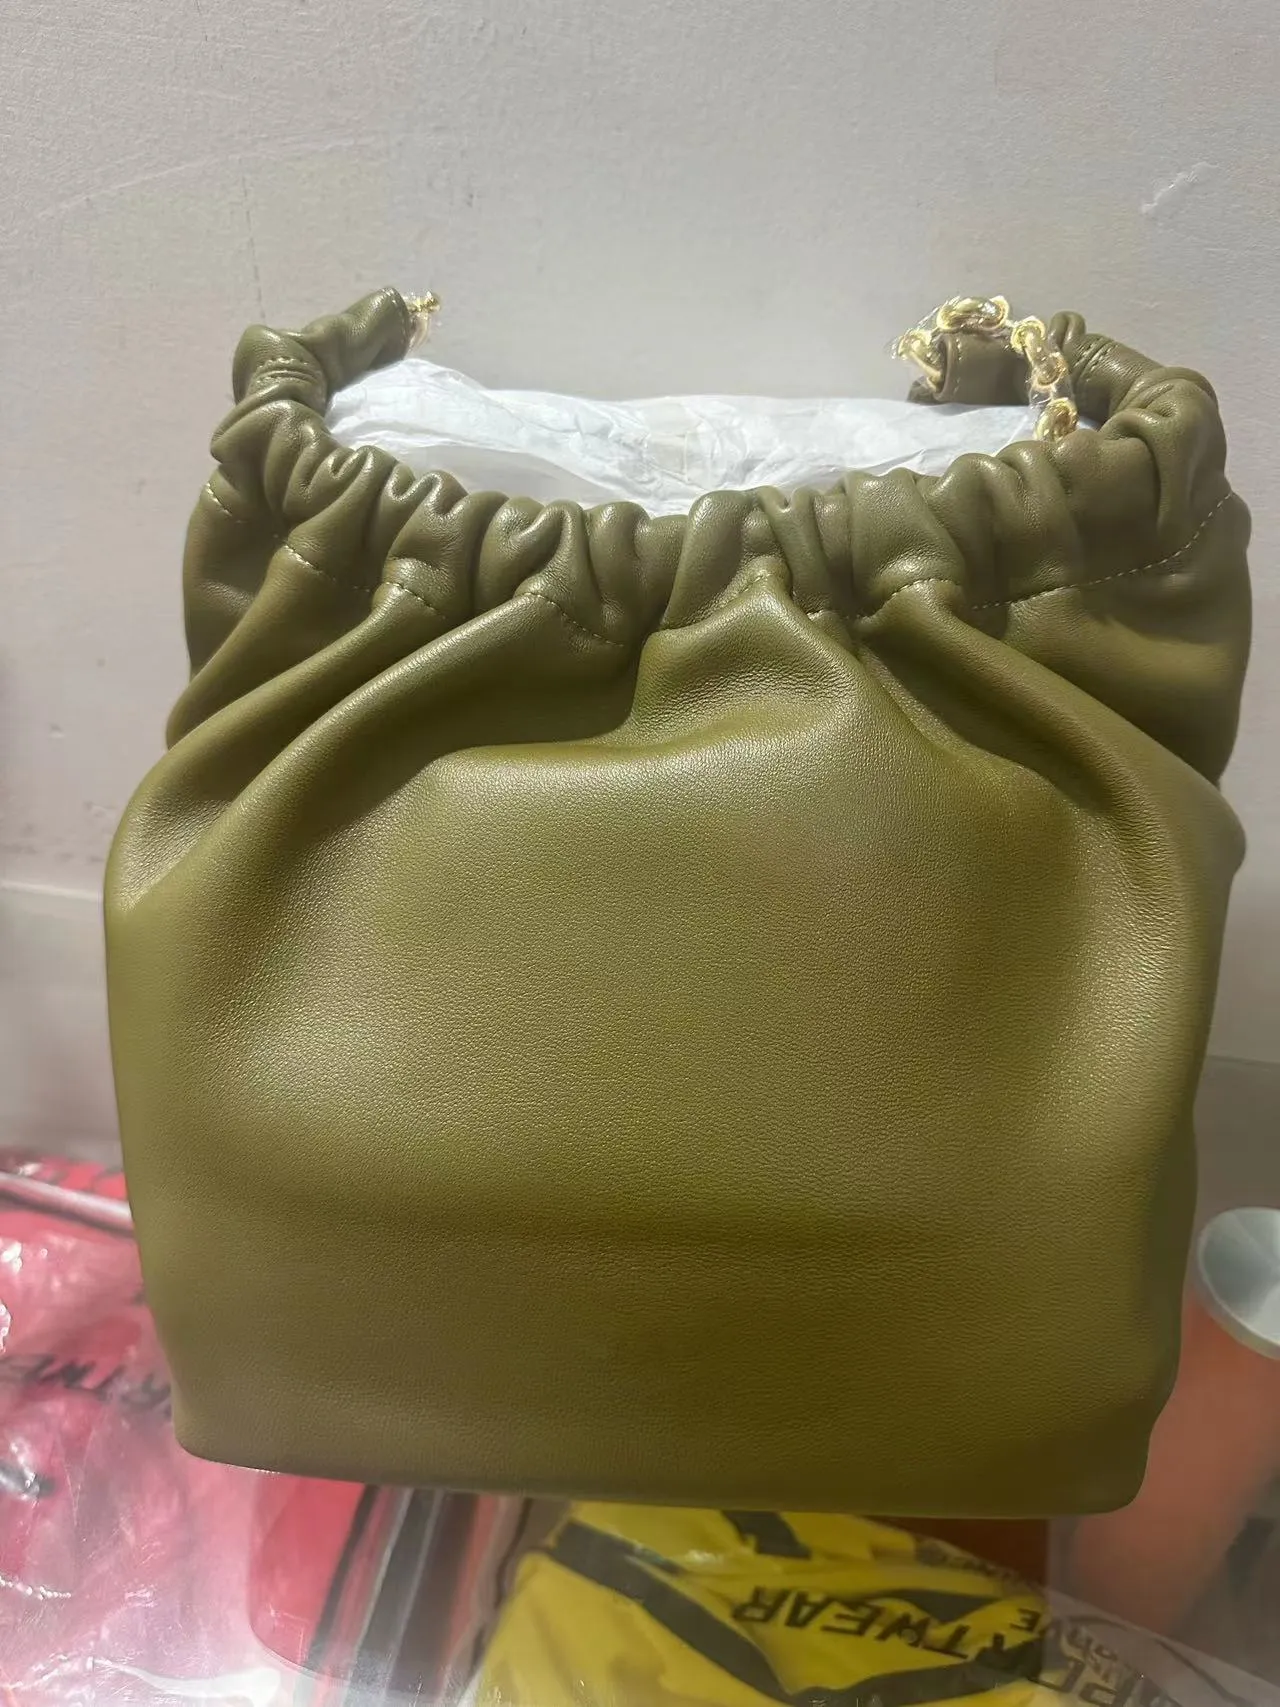 Nappa koyun derisi sıkma kılıfları omuz çantası alt koltuk çantası üst deri moda aksesuarları tote çanta yeni stil geliyor tasarımcı çanta cüzdan çanta çanta